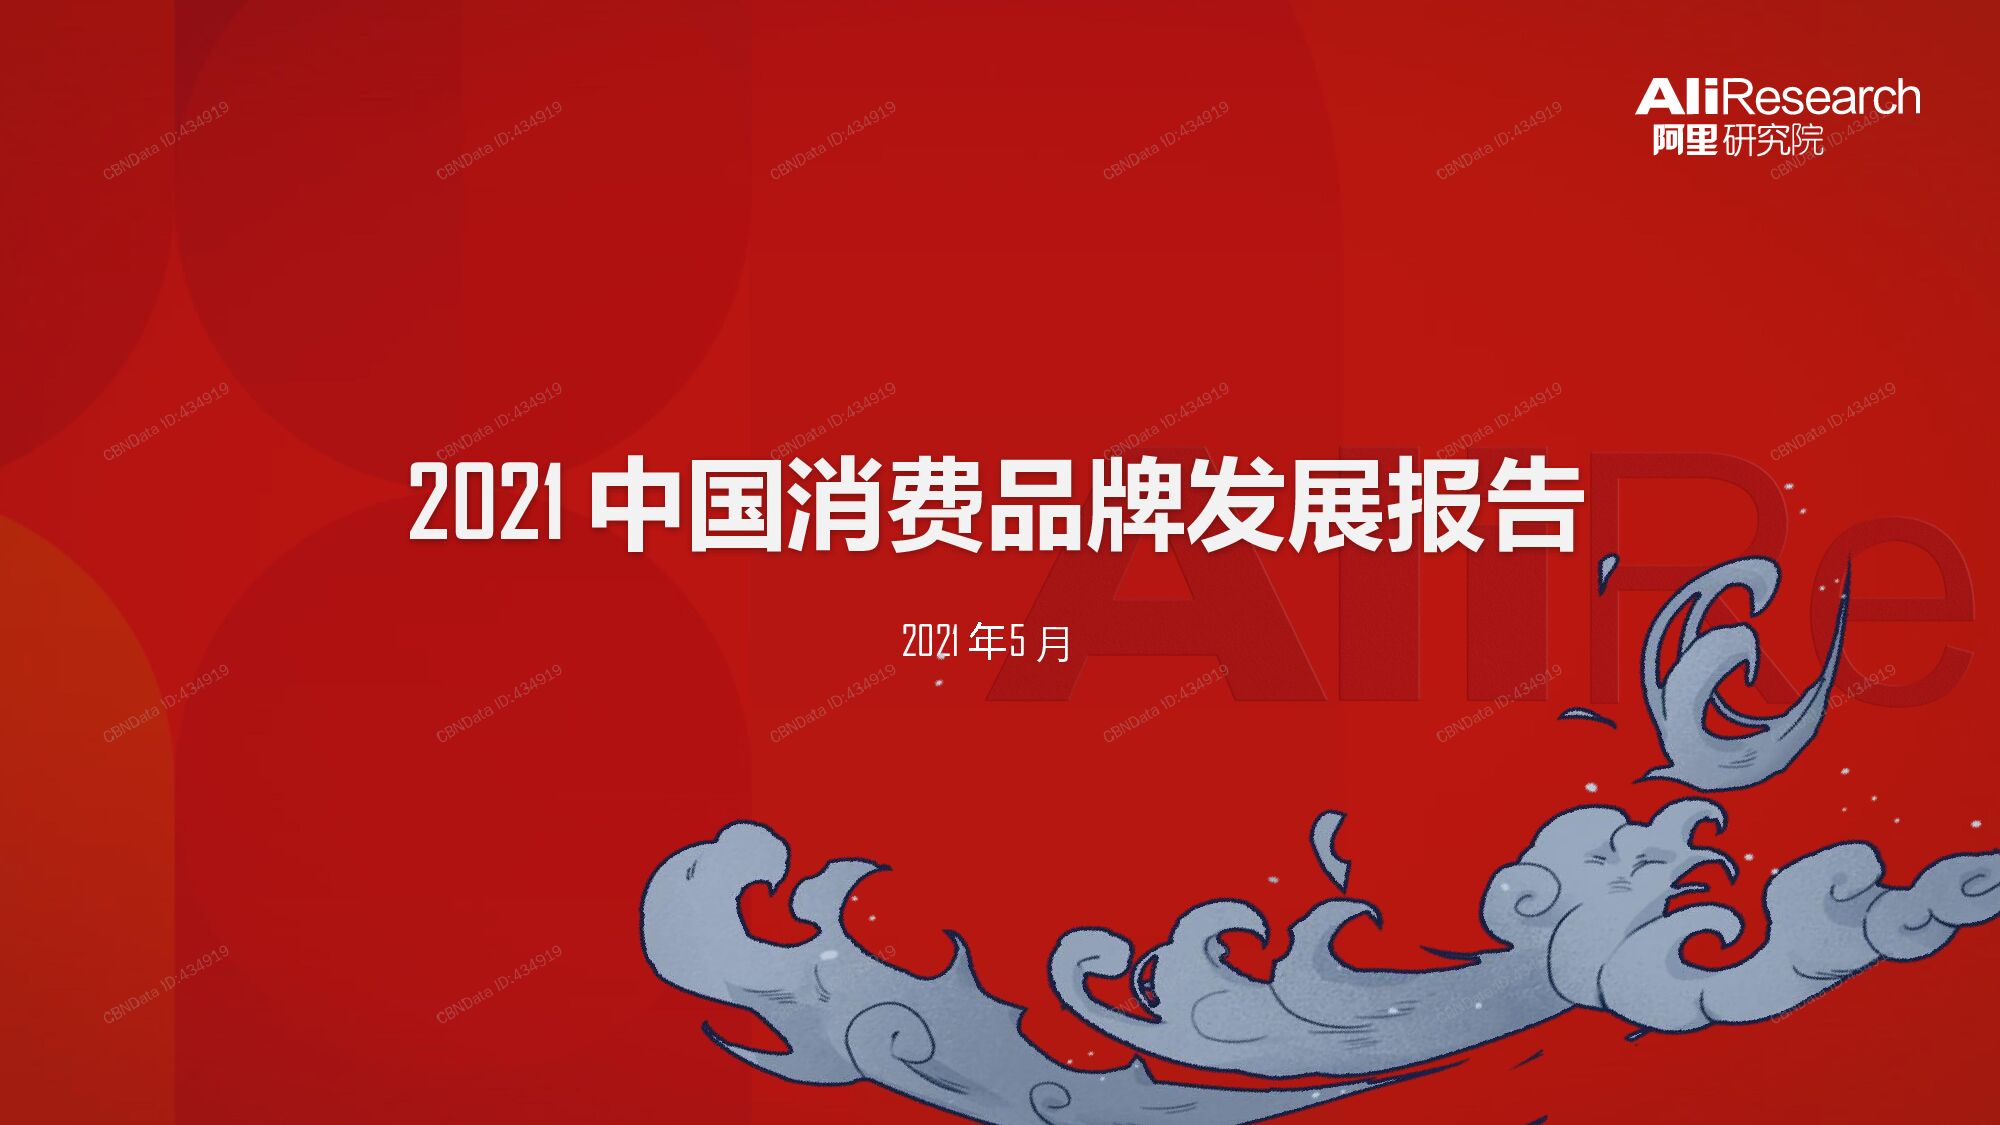 2021年中国消费品牌发展报告第一财经CBNData